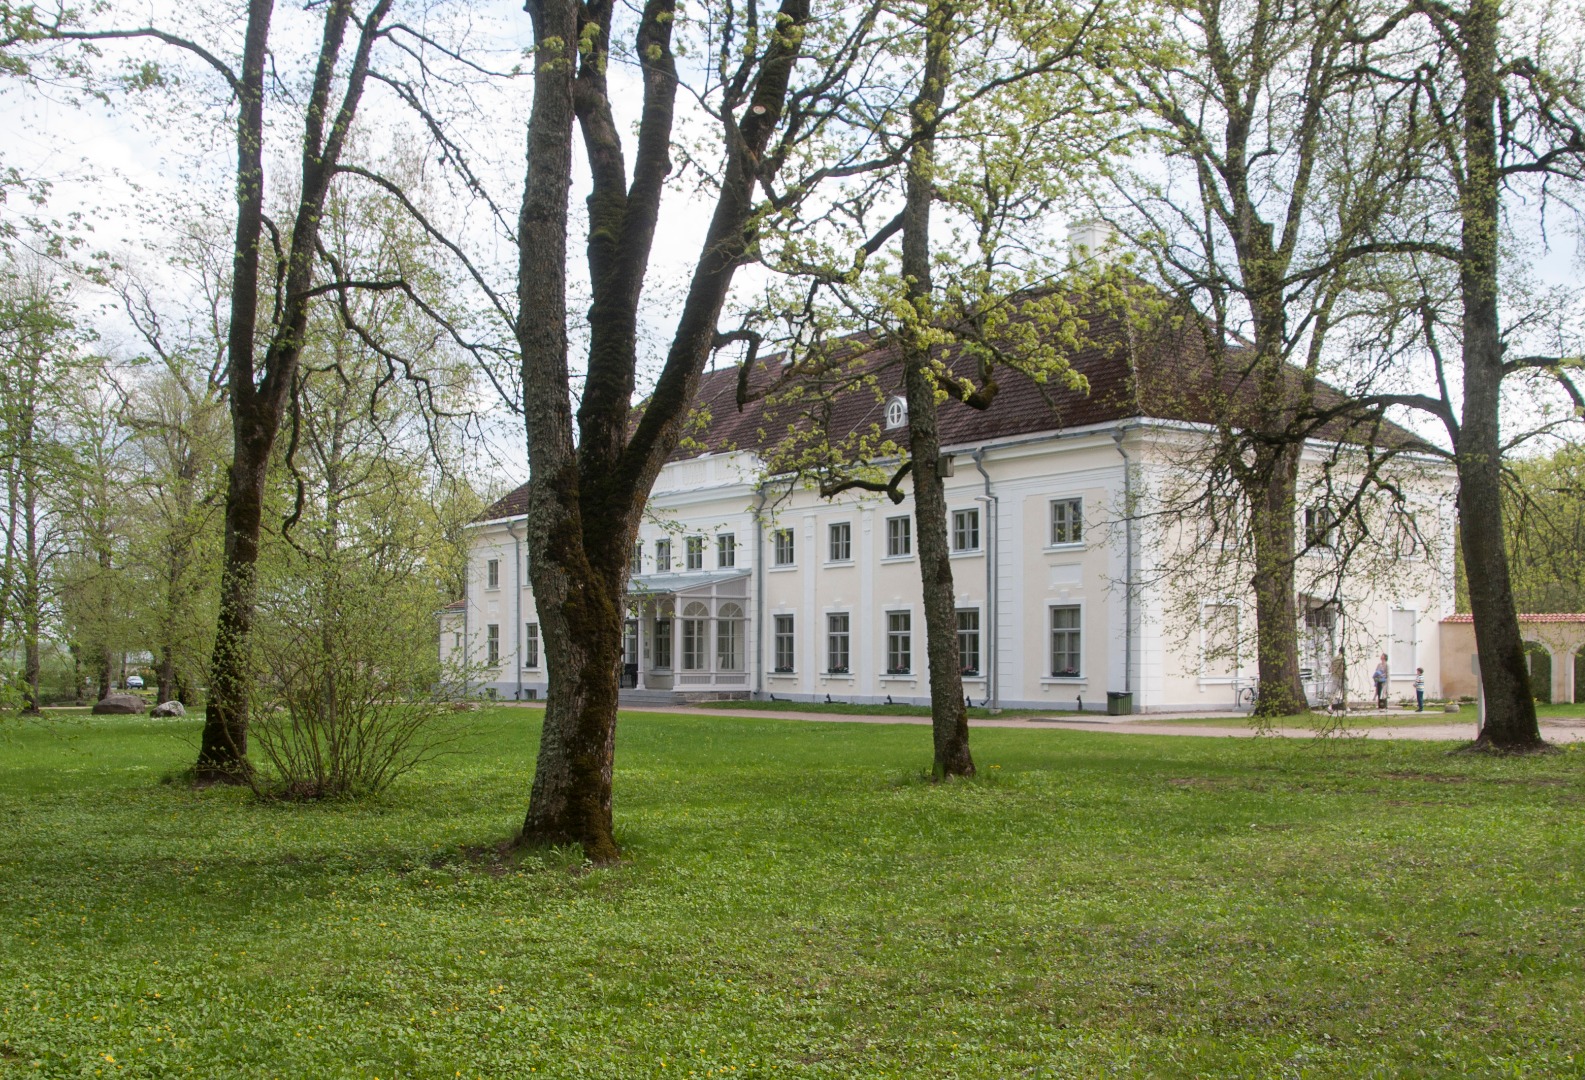 Main building of Anija Manor, 18th century. rephoto